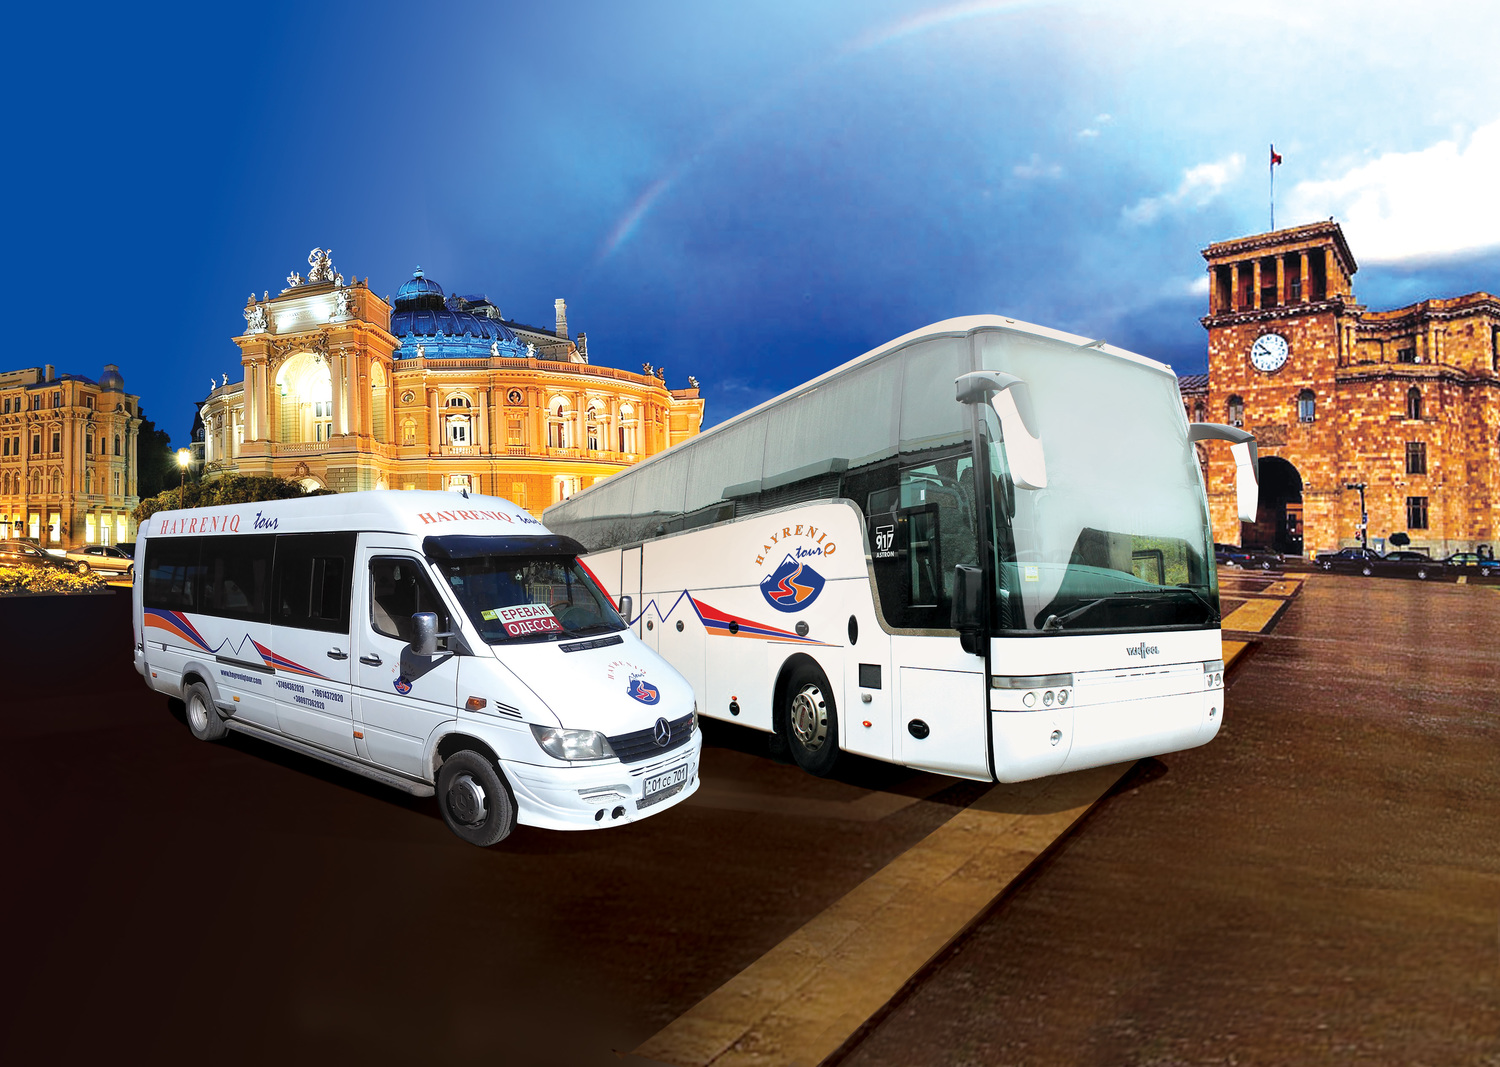 Все автобусы города <span style="font-weight: bold;">Новороссийск</span>